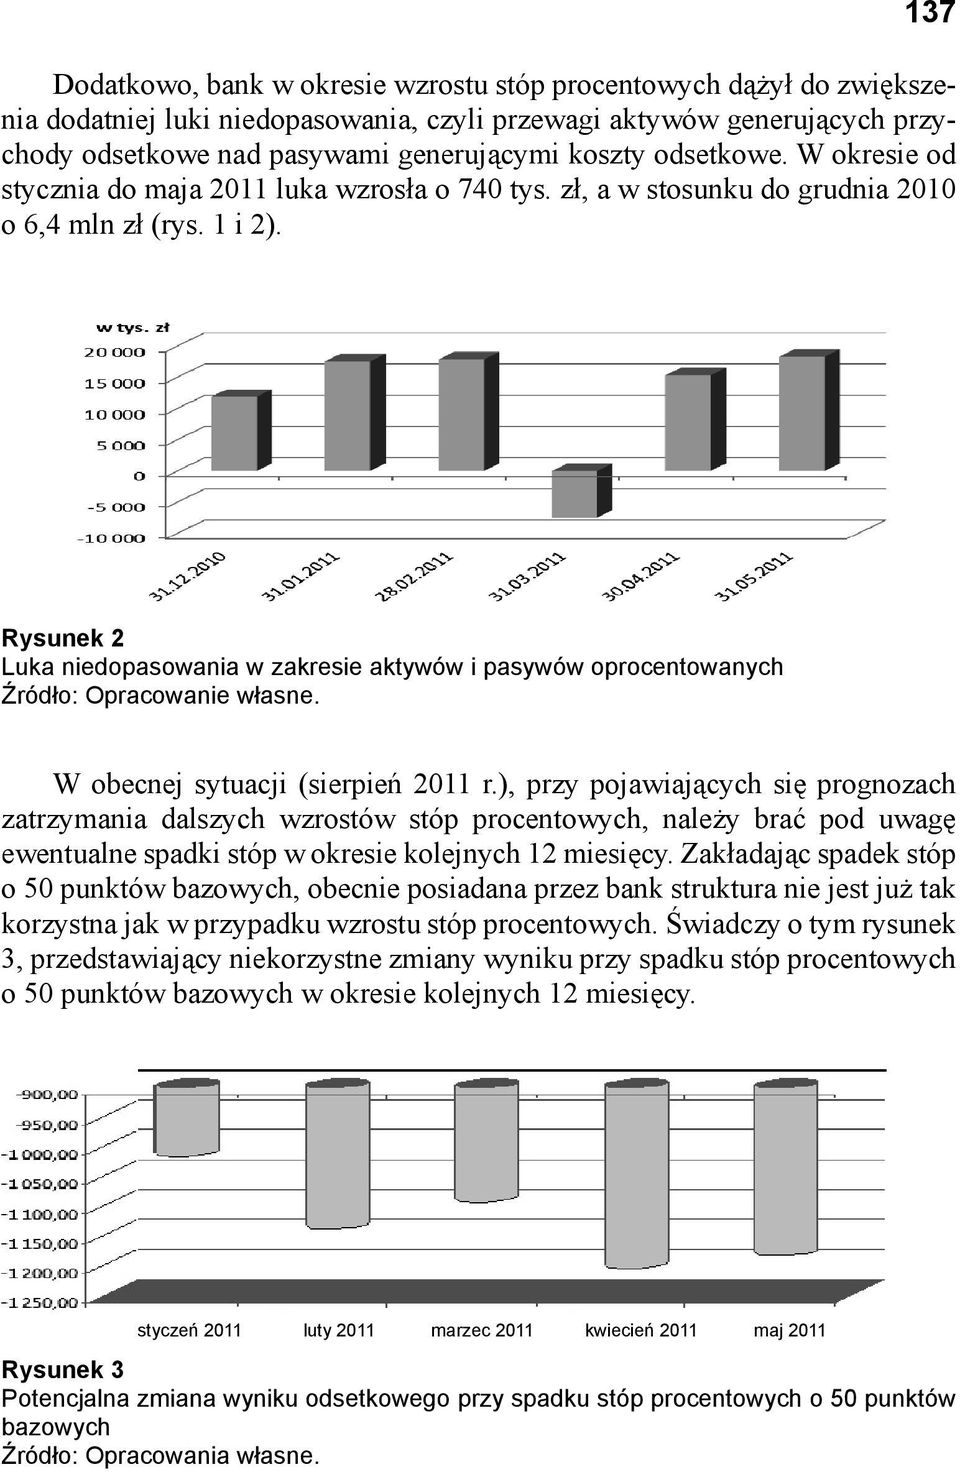 uka niedopasowania zakresie aktywów i pasywów oprocentowanych owania w asne. nej sytuacji tj. sierpie 2011r.